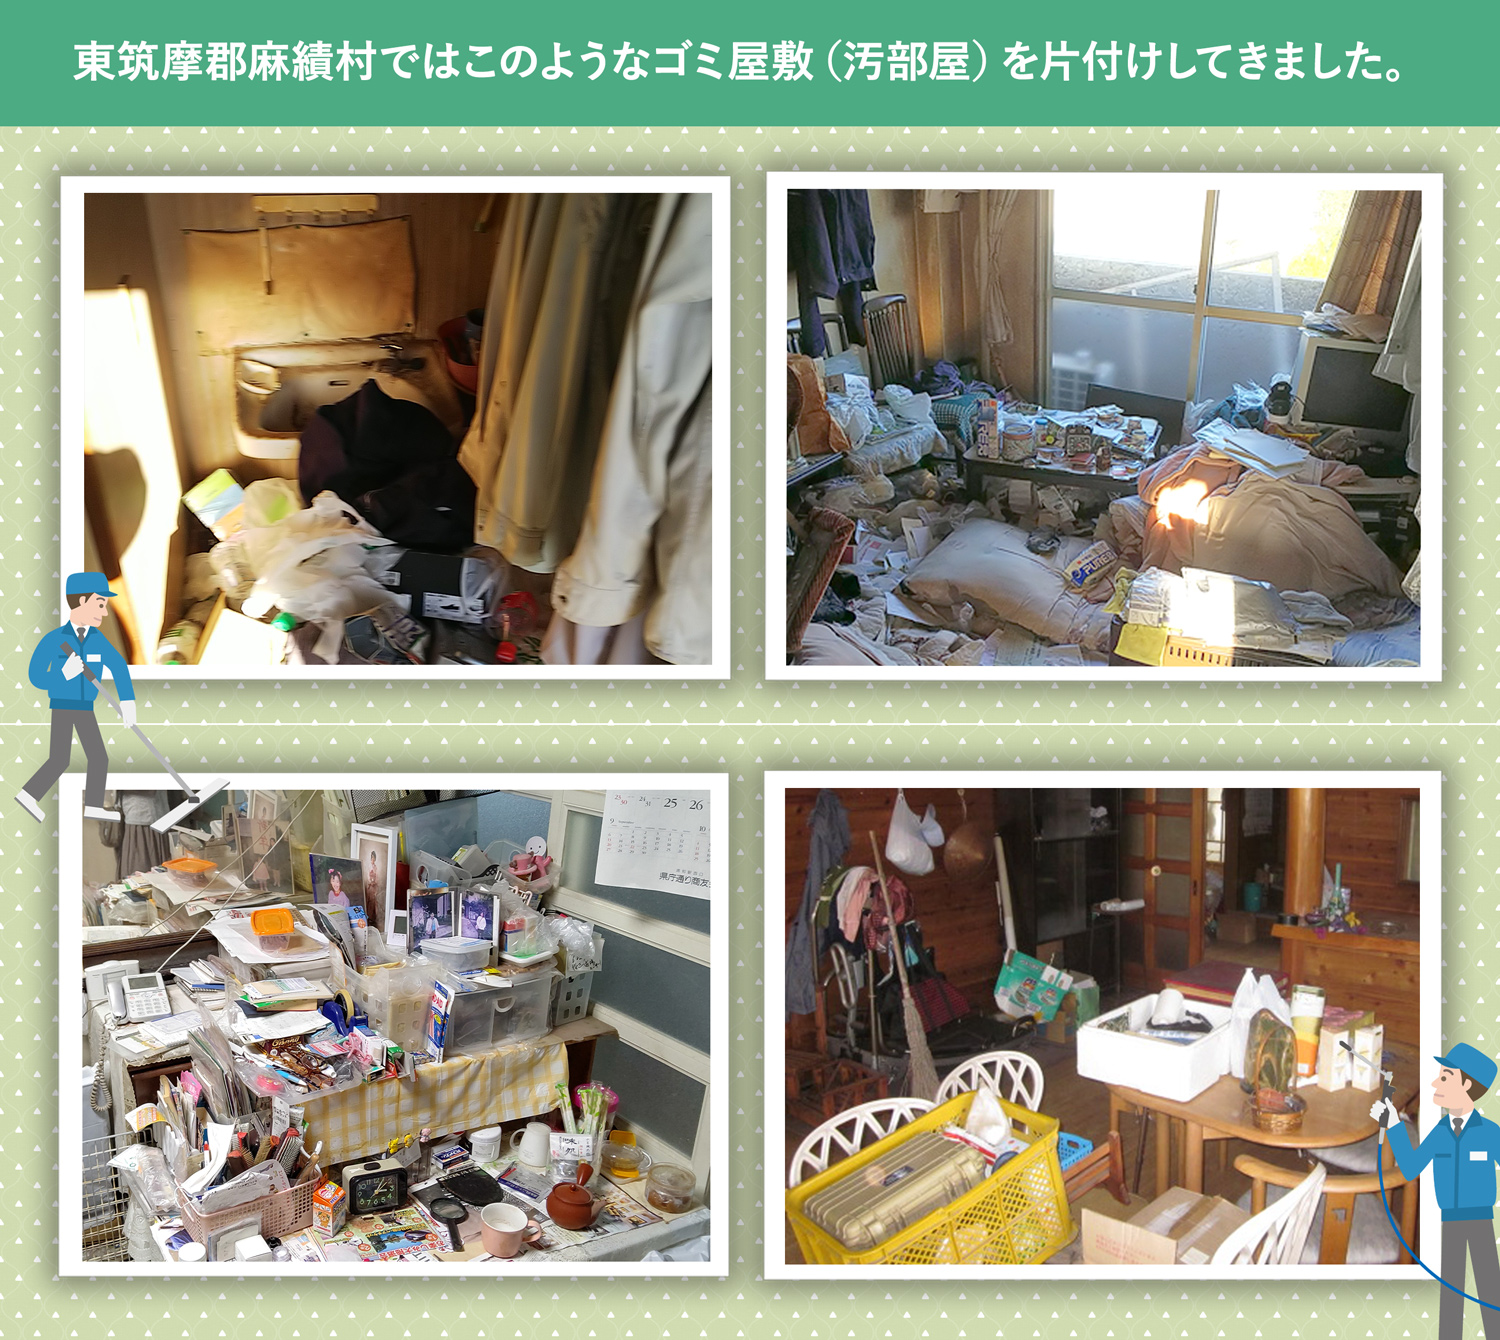 東筑摩郡麻績村で行ったで行ったごみ屋敷・汚部屋の片付けの一例